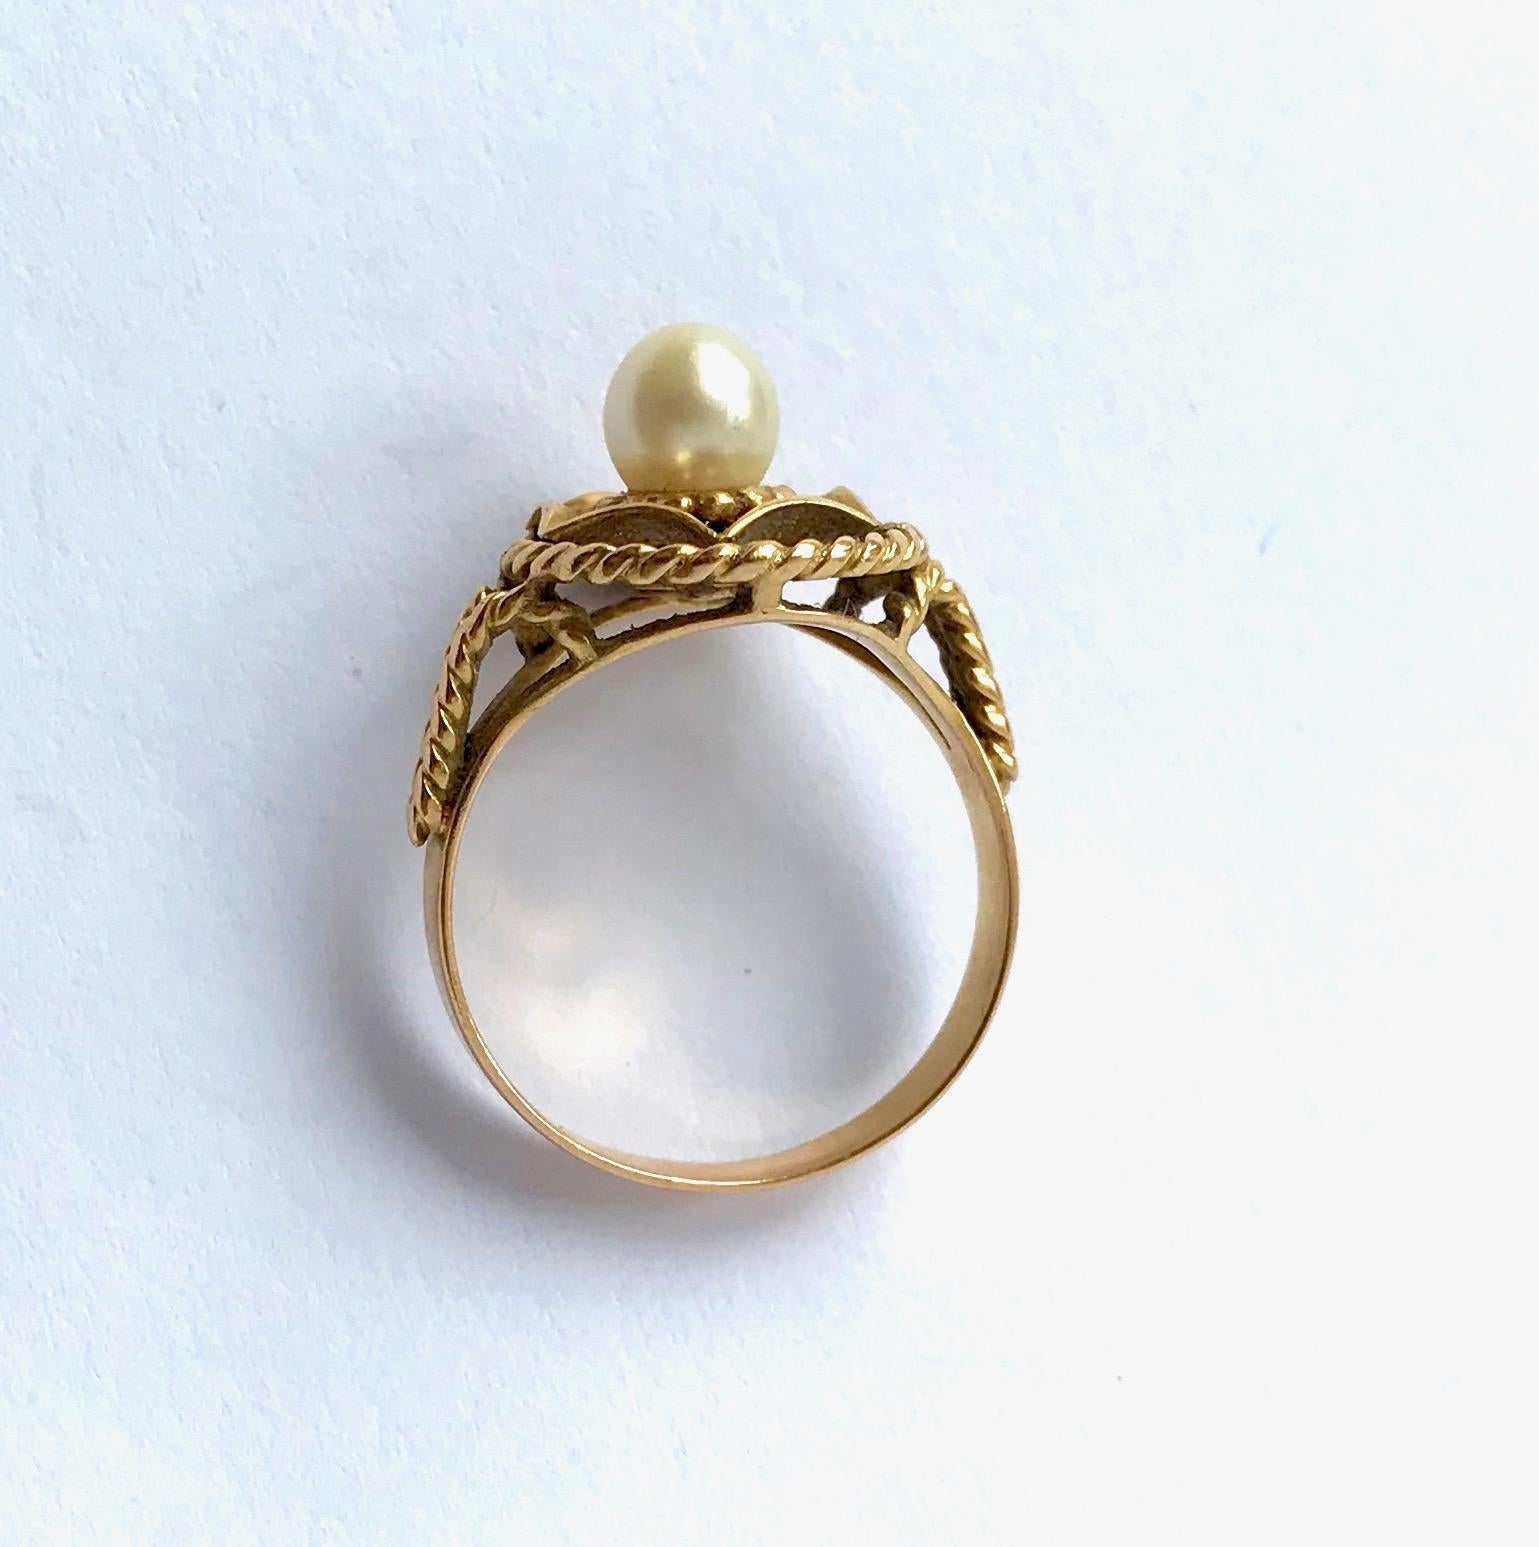 Vintage Ring aus 18 kt Gelbgold und einer Perle um 1960
Eine Zuchtperle Durchmesser 5 mm in der Mitte eines Korbes. 
Der Korb und der obere Teil des Rings sind gedreht. Sehr guter Allgemeinzustand für dieses Schmuckstück.
Adlerkopfpunze (750/000